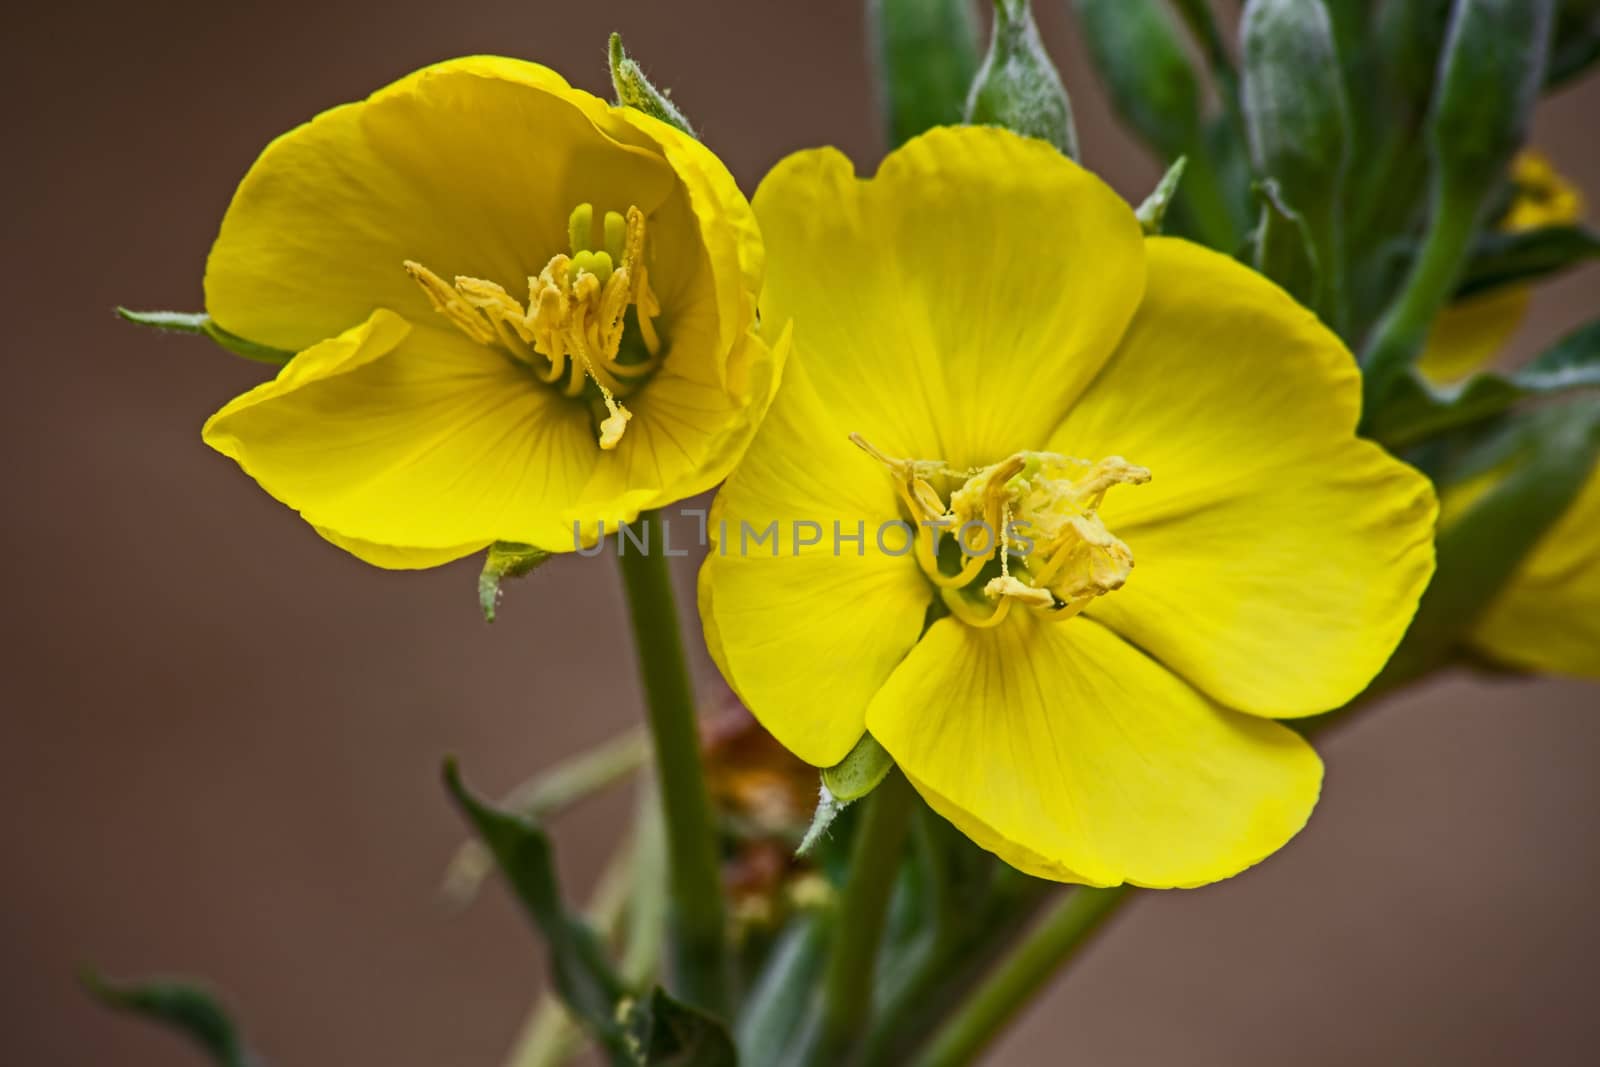 Flowers of the Karoo Gold Rhigozum obovatum Burch by kobus_peche